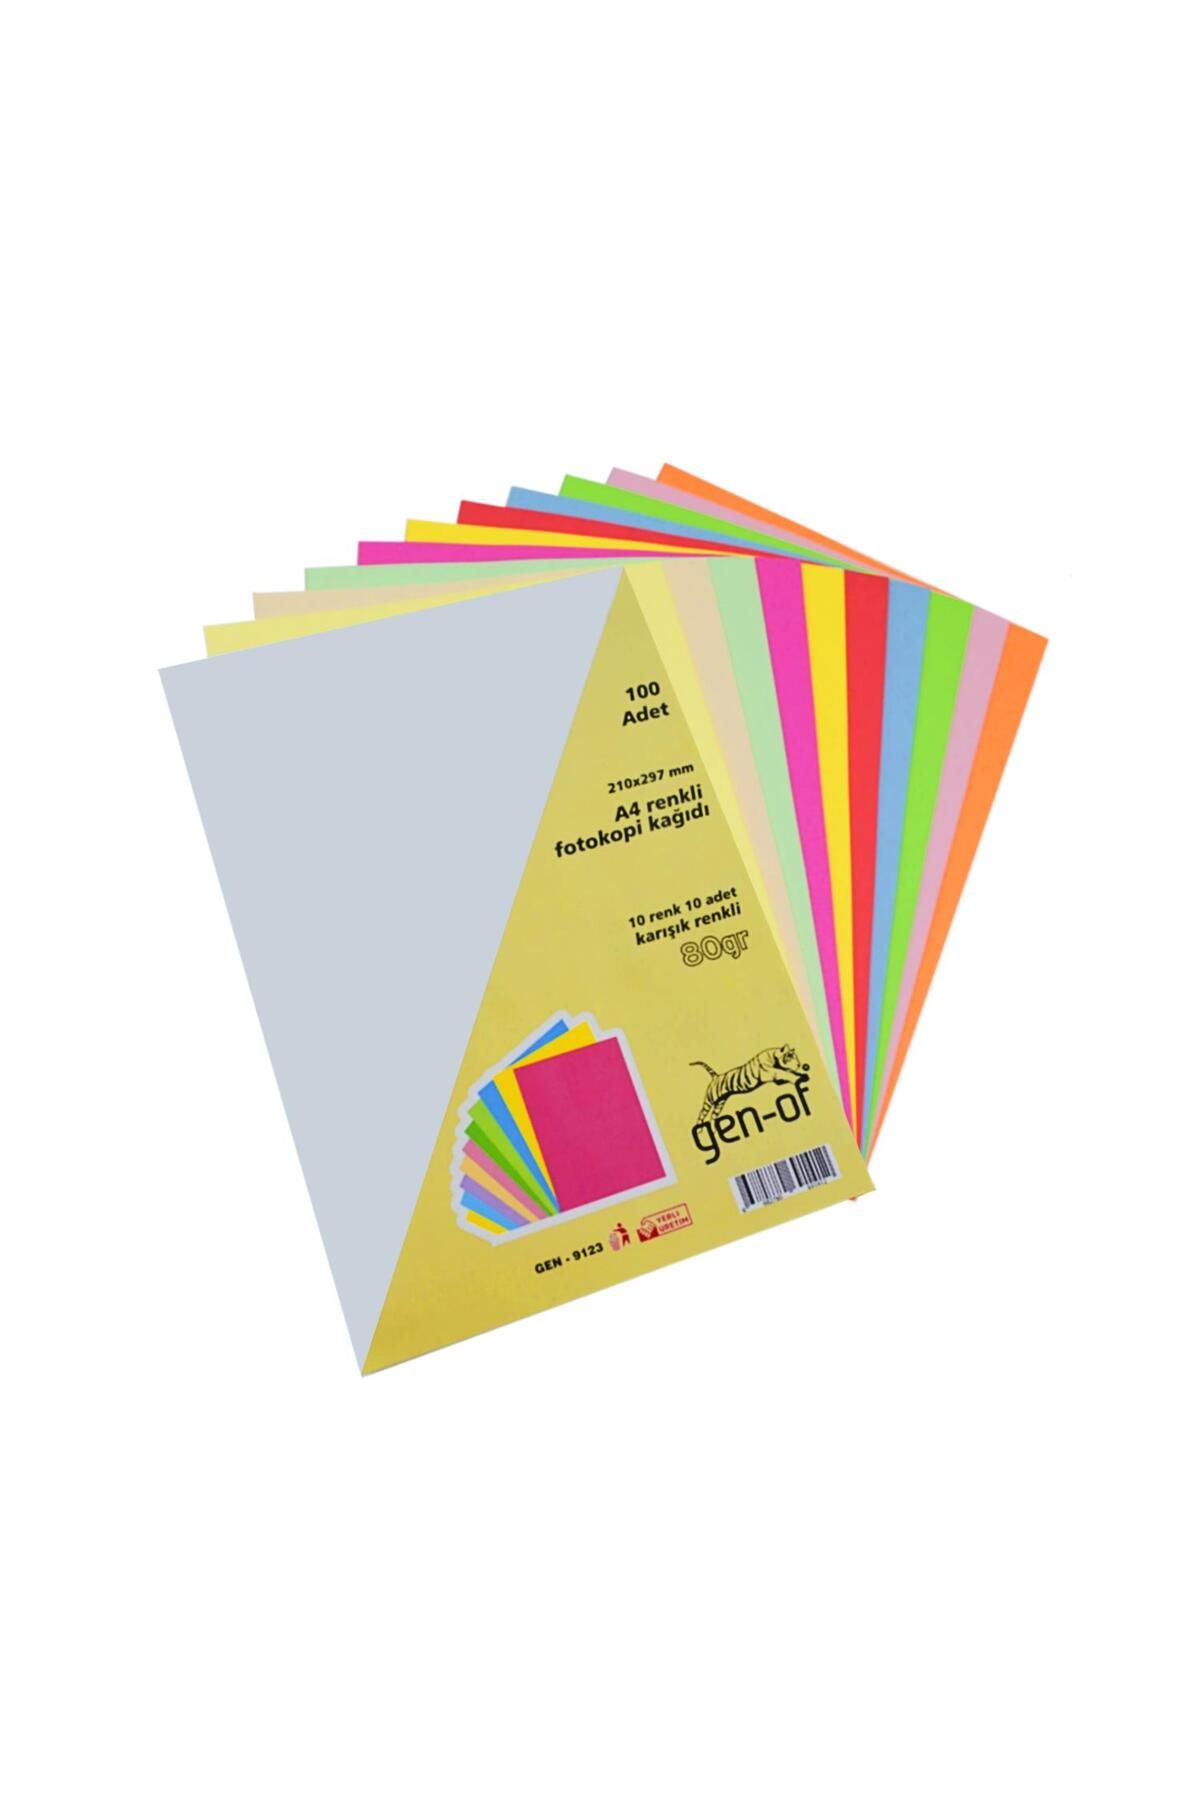 Gen-of A4 80 g/m² Renkli Fotokopi Kağıdı 10 Renk 100 lü